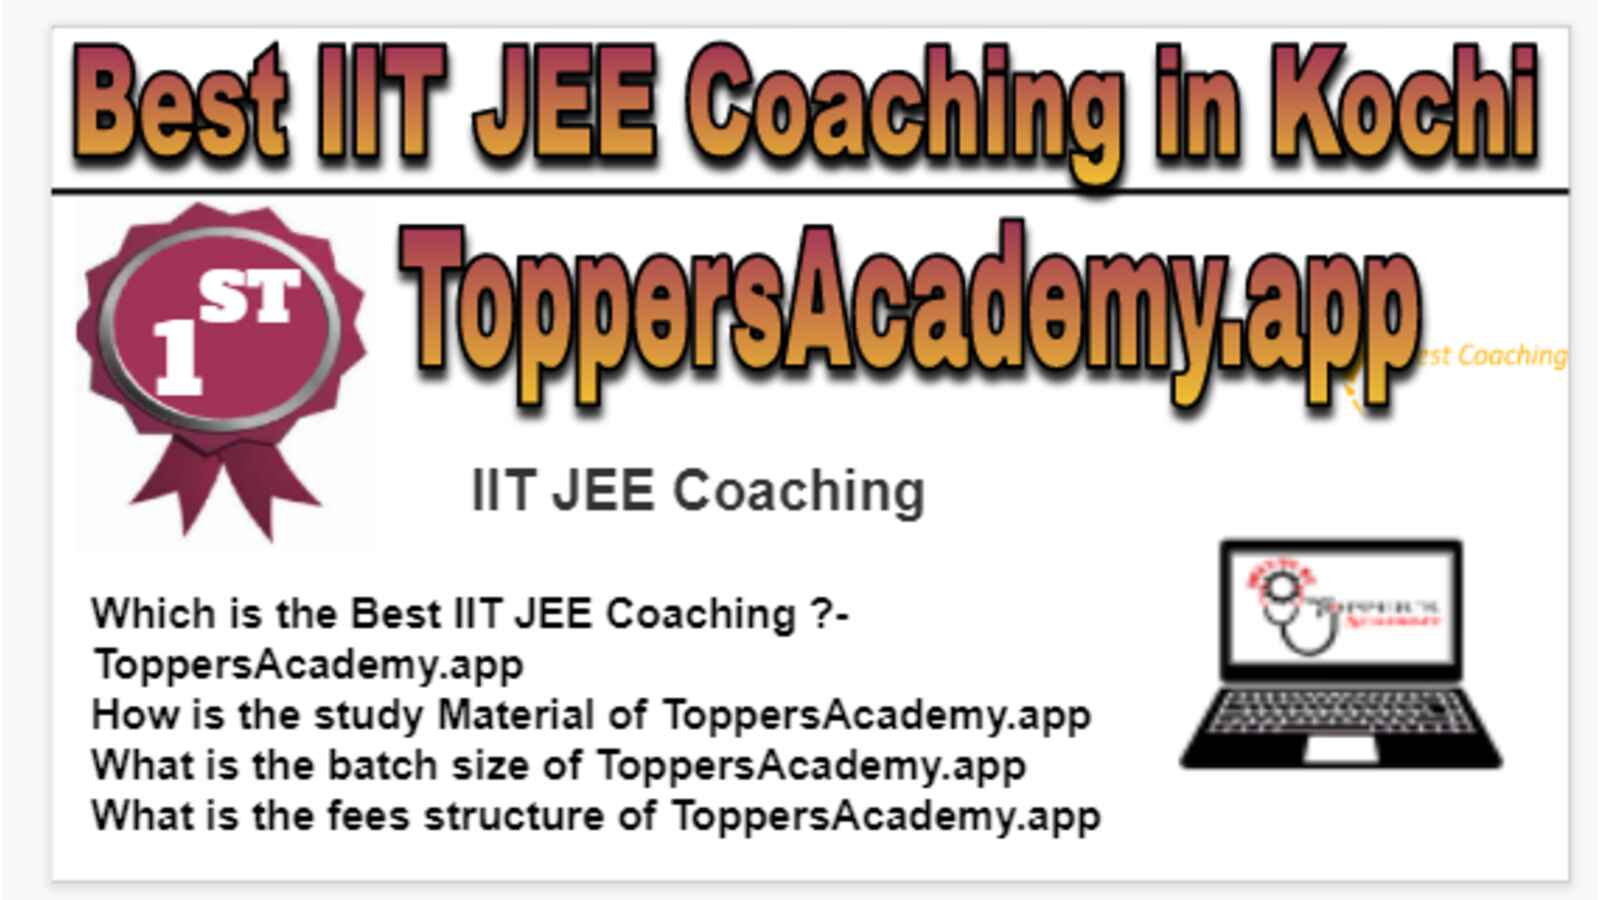 Rank 1 Best IIT JEE Coaching in Kochi